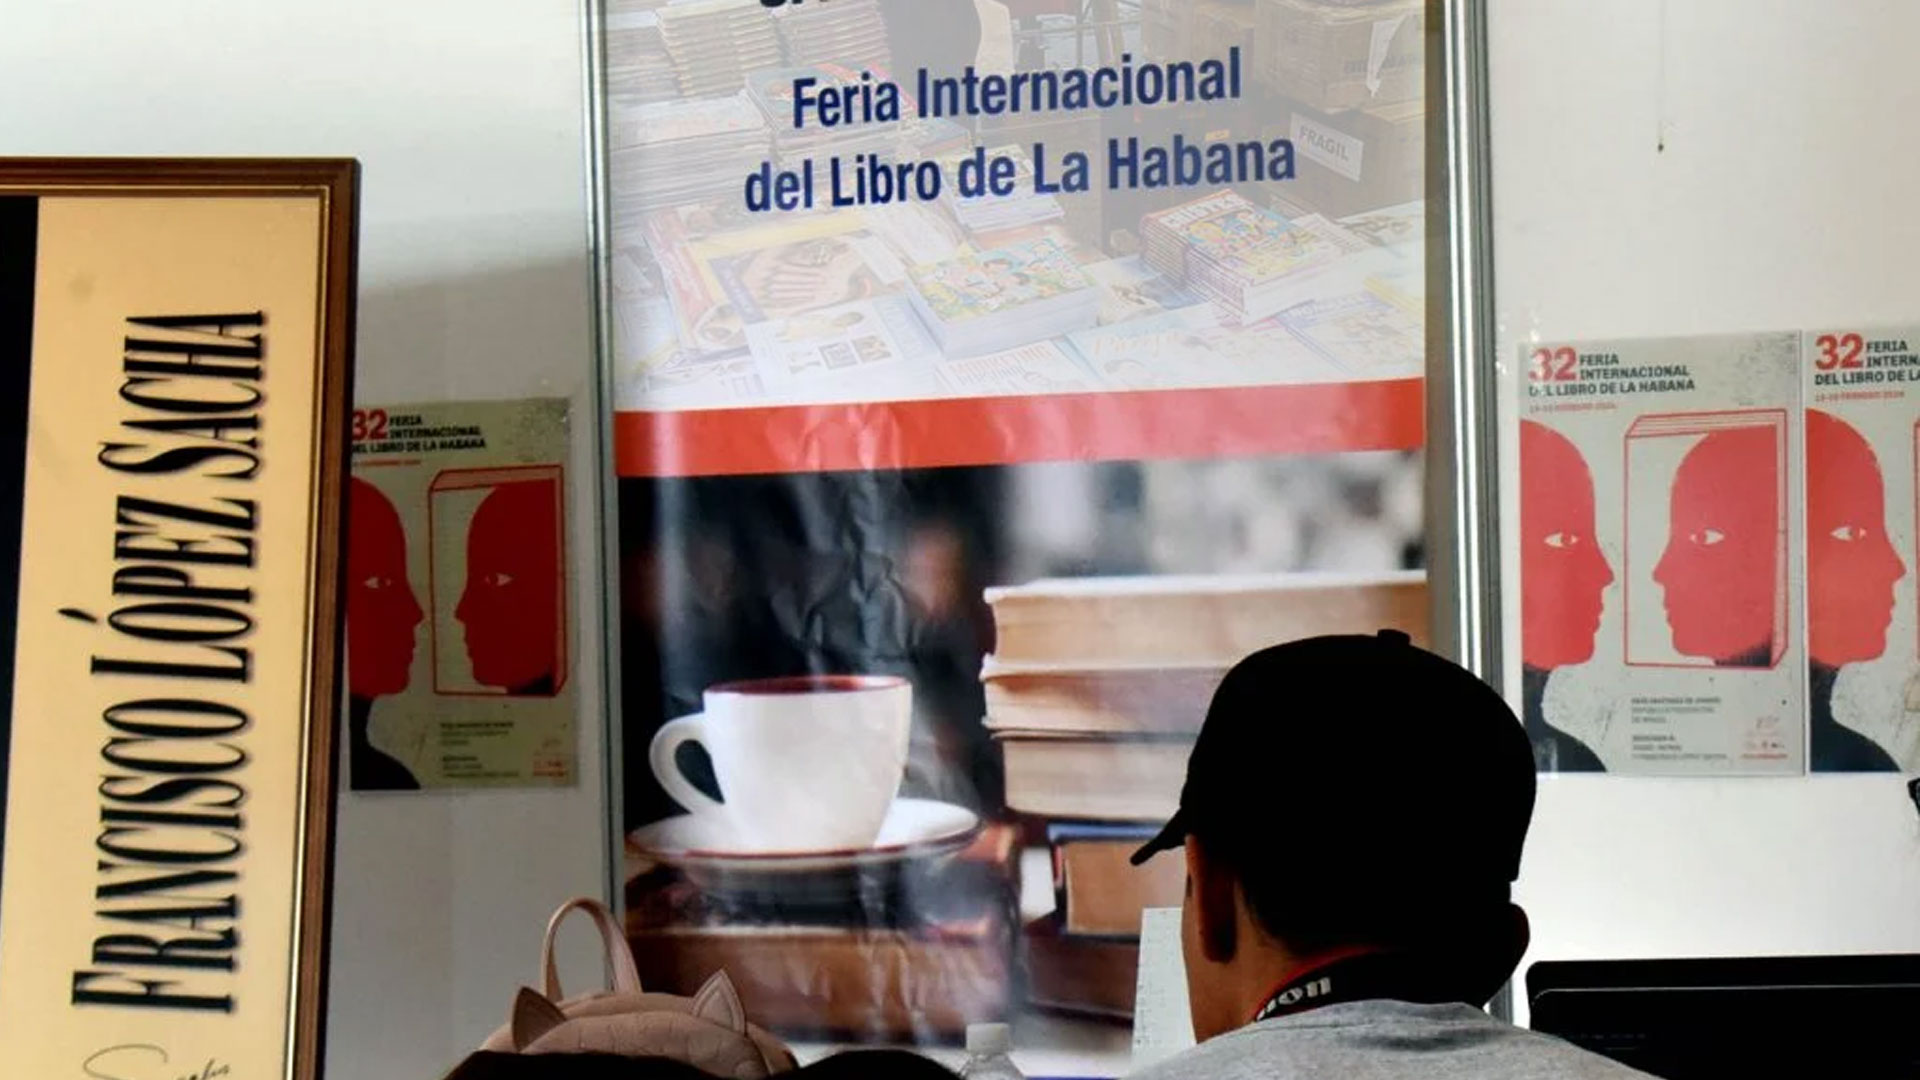 Feria Internacional del Libro Cuba